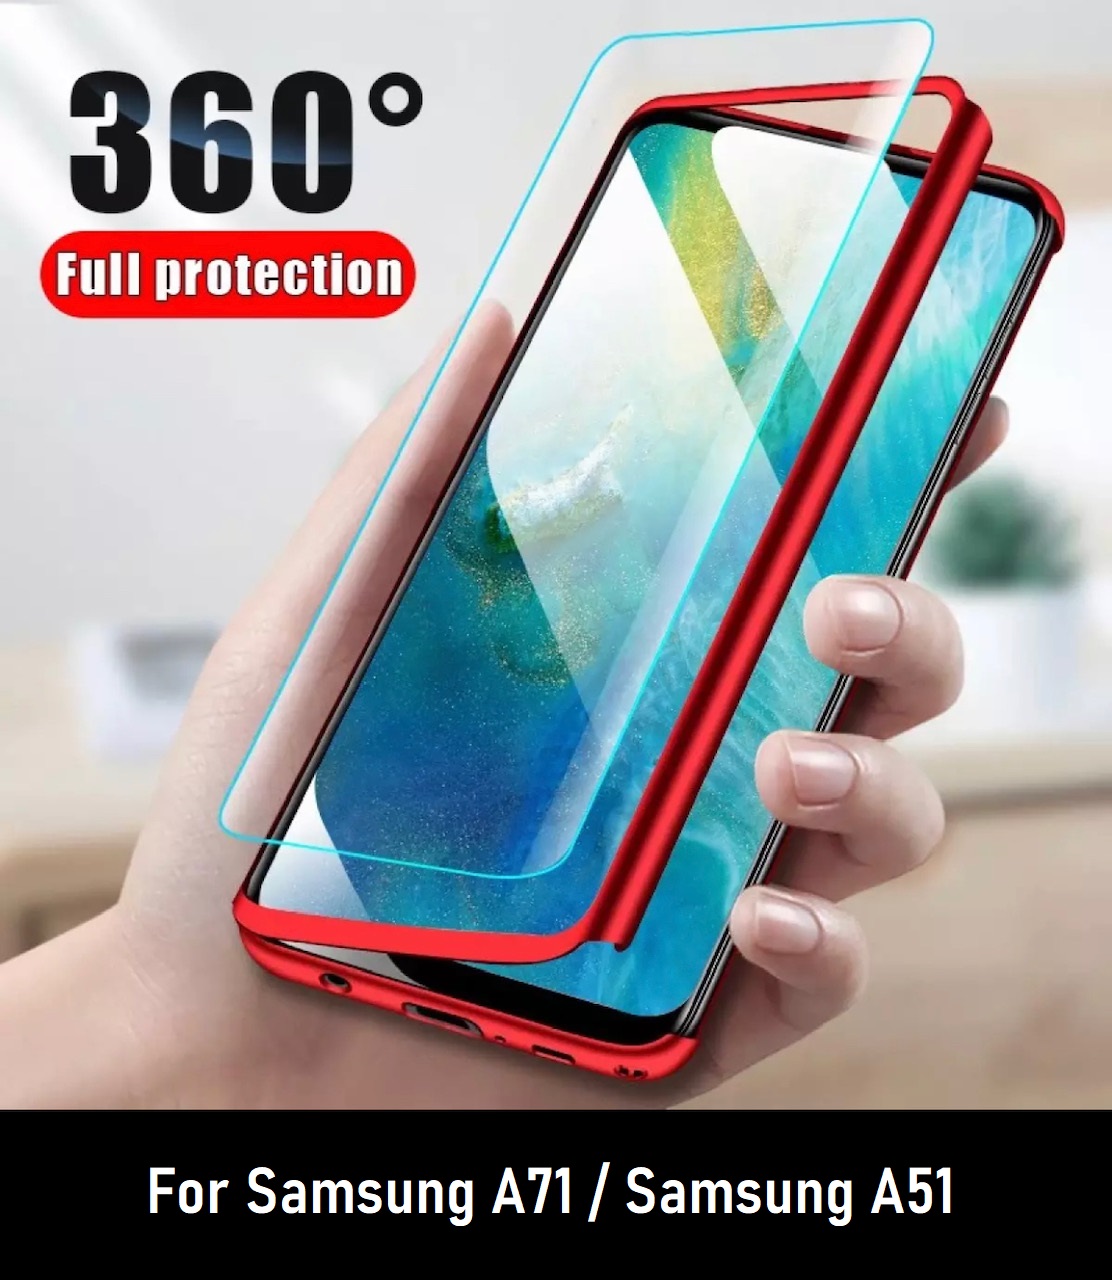 สินค้าพร้อมส่ง !! Case Samsung Galaxy A51 เคสซัมซุง A51 เคสประกบ 360 องศา สวยและบางมาก Samsung A51 Case สินค้าใหม่ สี สีแดง สี สีแดงรูปแบบรุ่นที่ีรองรับ Samsung A71